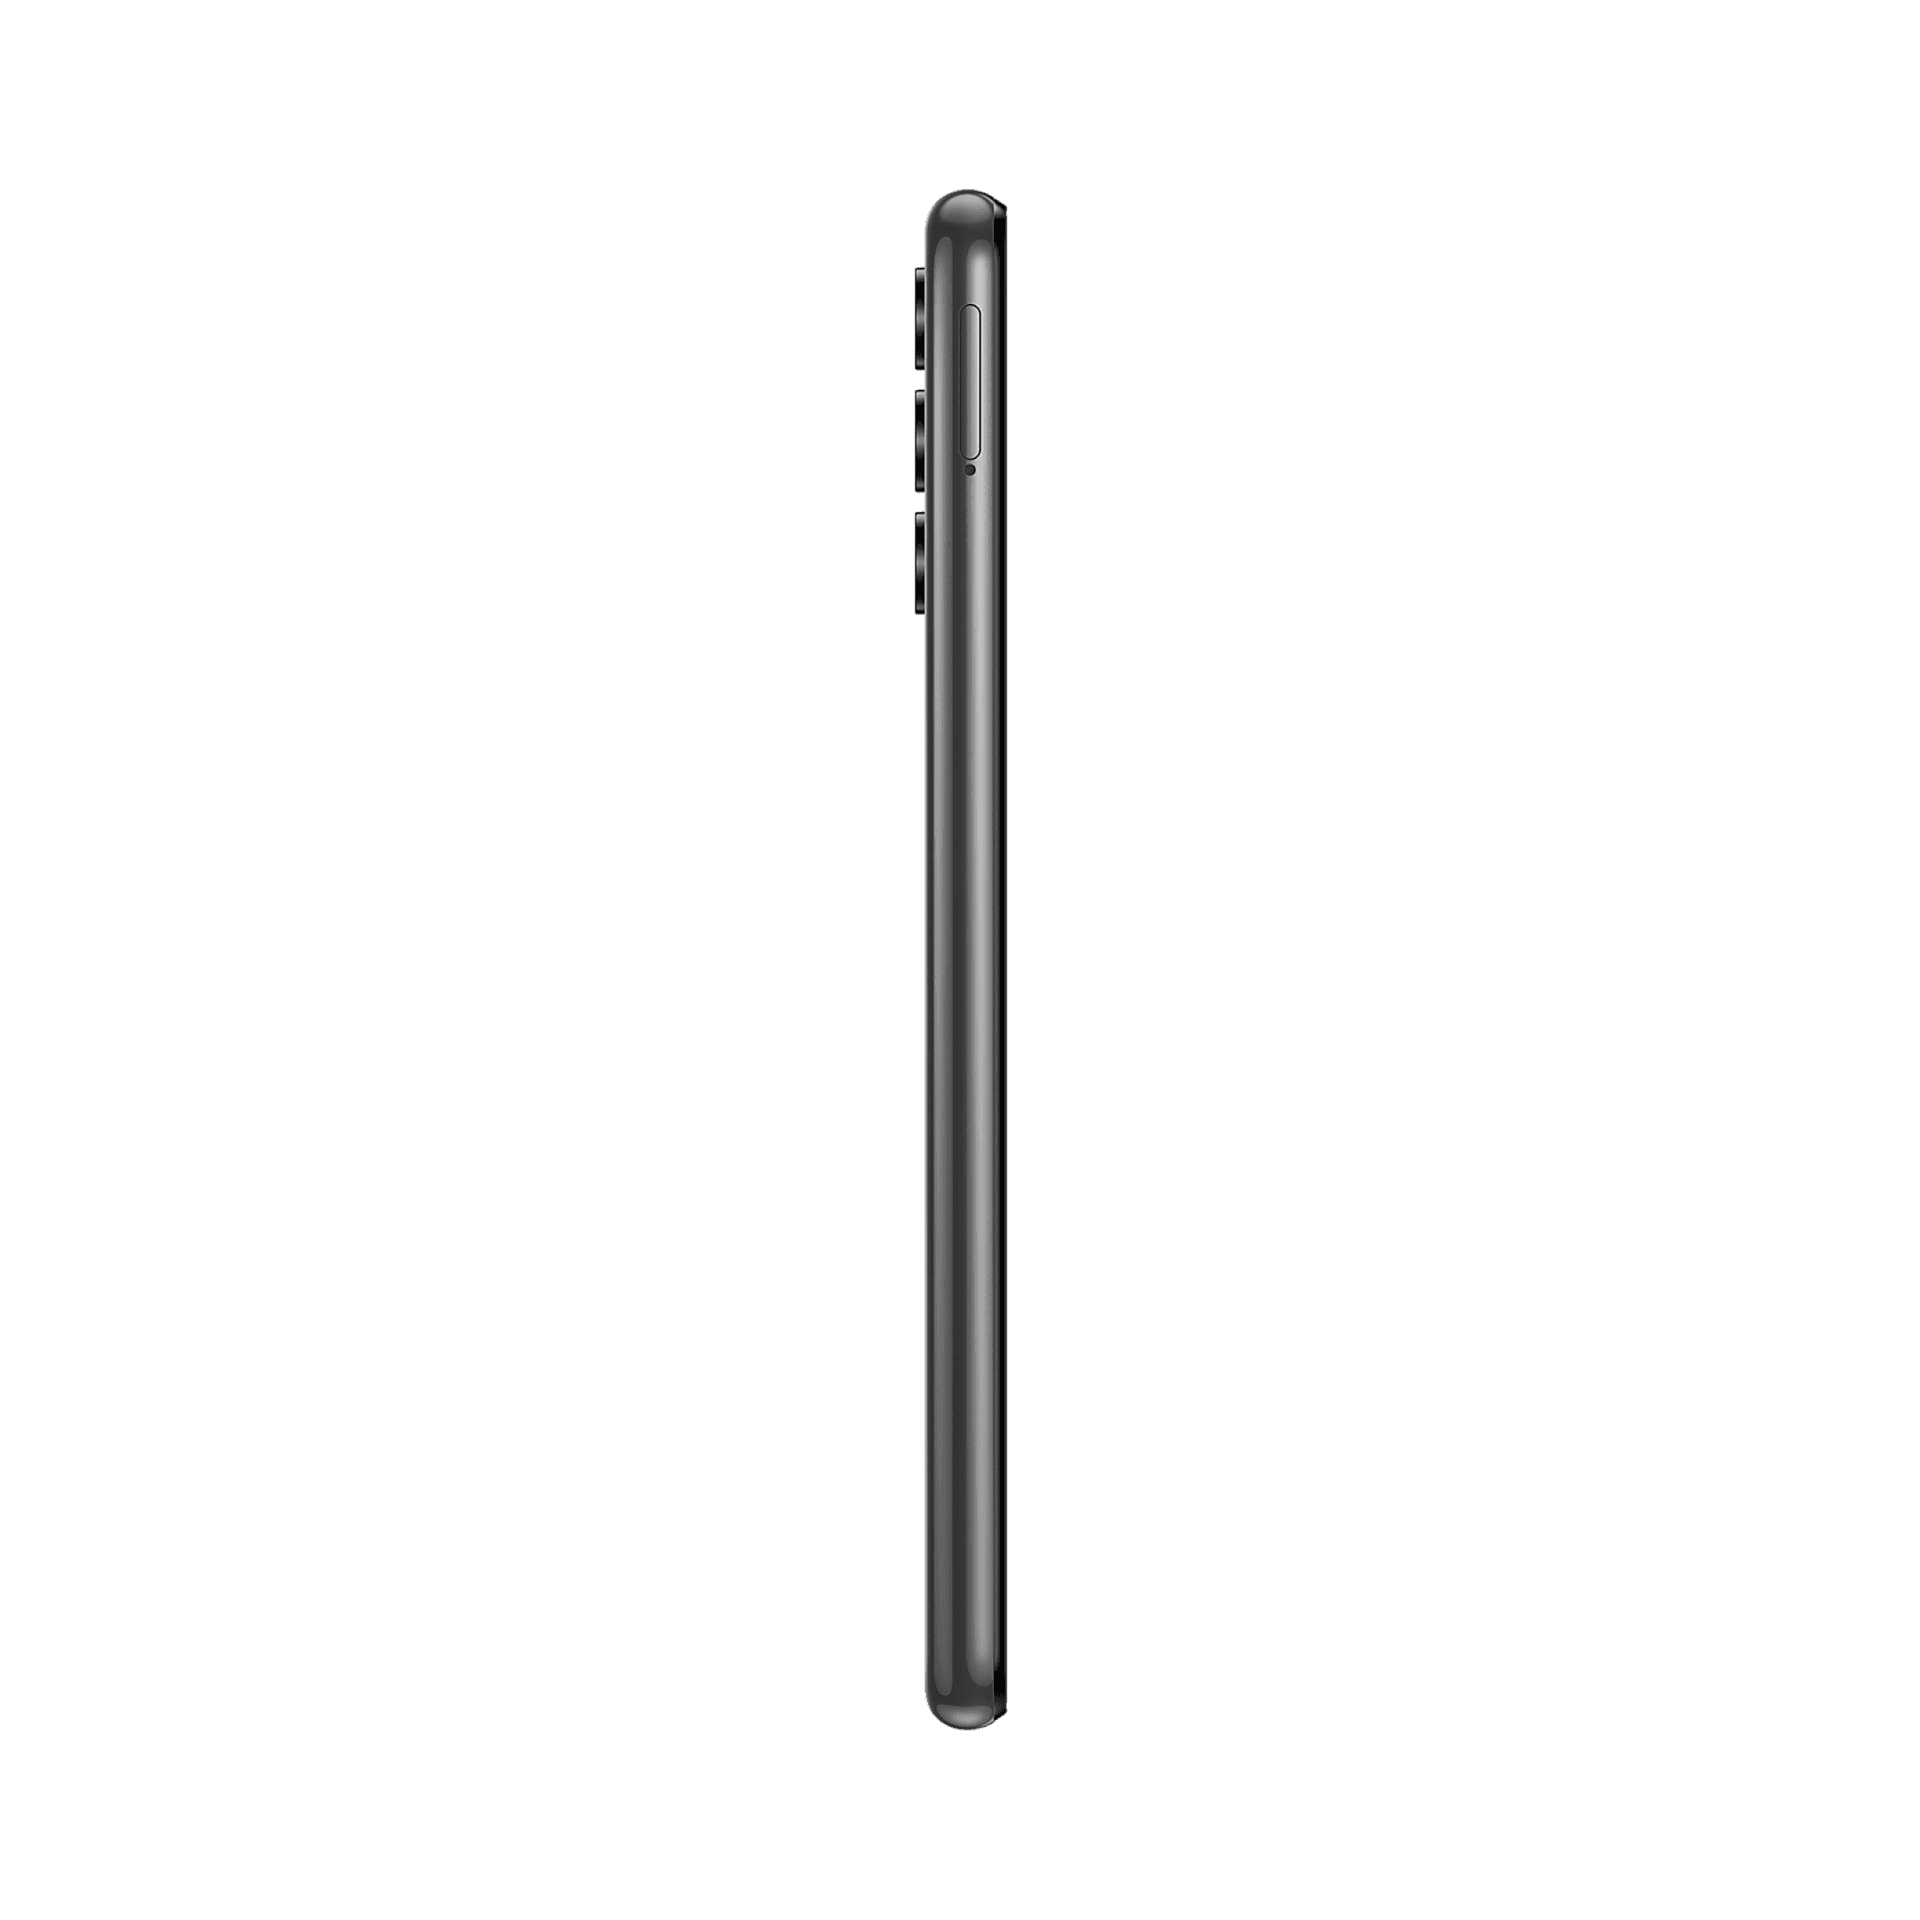 Samsung Galaxy A13 - 128 GB - Siyah